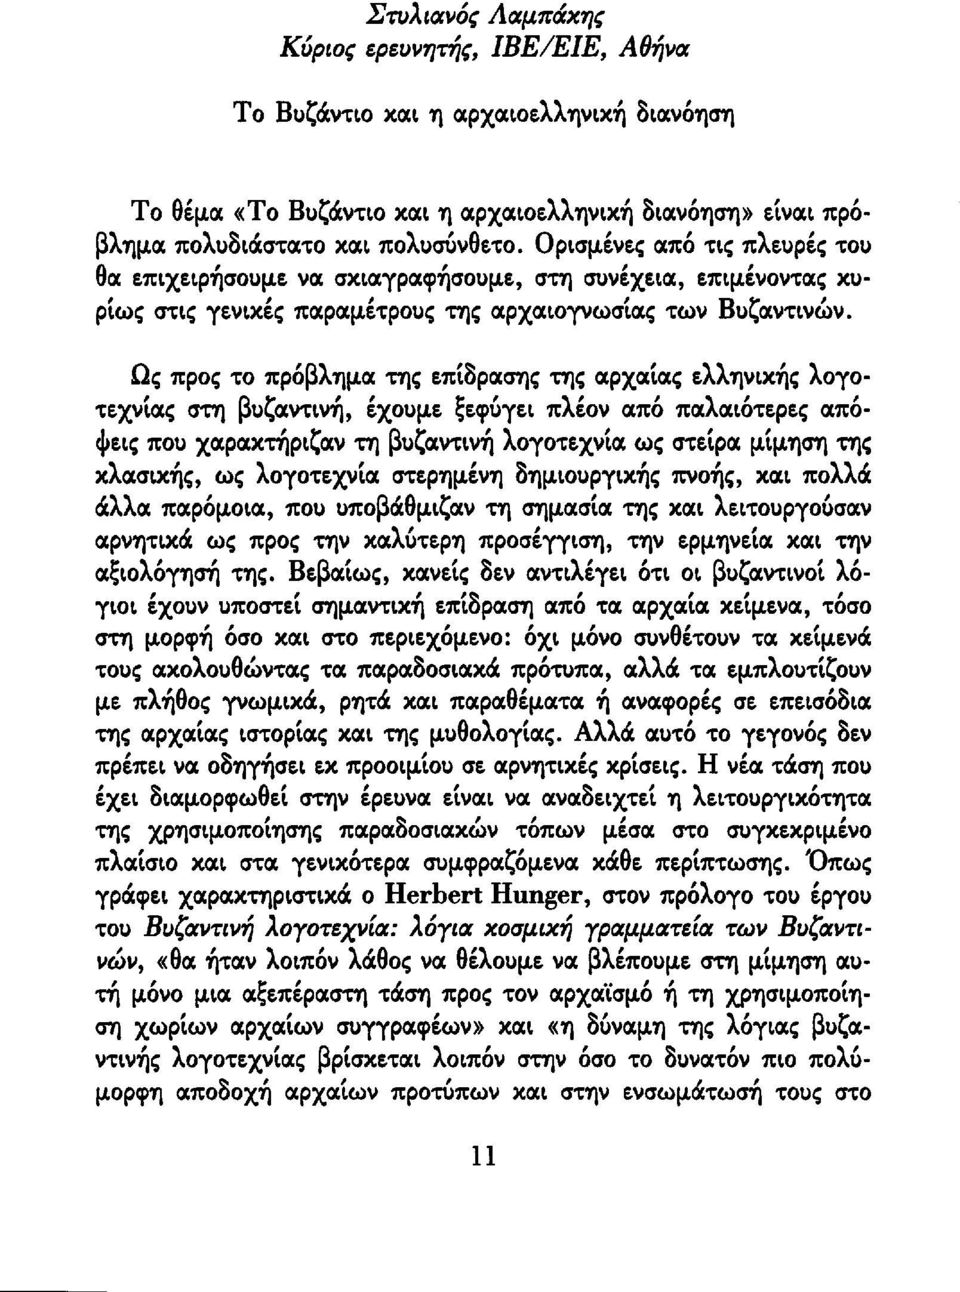 Ως προς το πρόβλημα της επίδρασης της αρχαίας ελληνικής λογοτεχνίας στη βυζαντινή, έχουμε ξεφύγει πλέον από παλαιότερες απόψεις που χαρακτήριζαν τη βυζαντινή λογοτεχνία ως στείρα μίμηση της κλασικής,